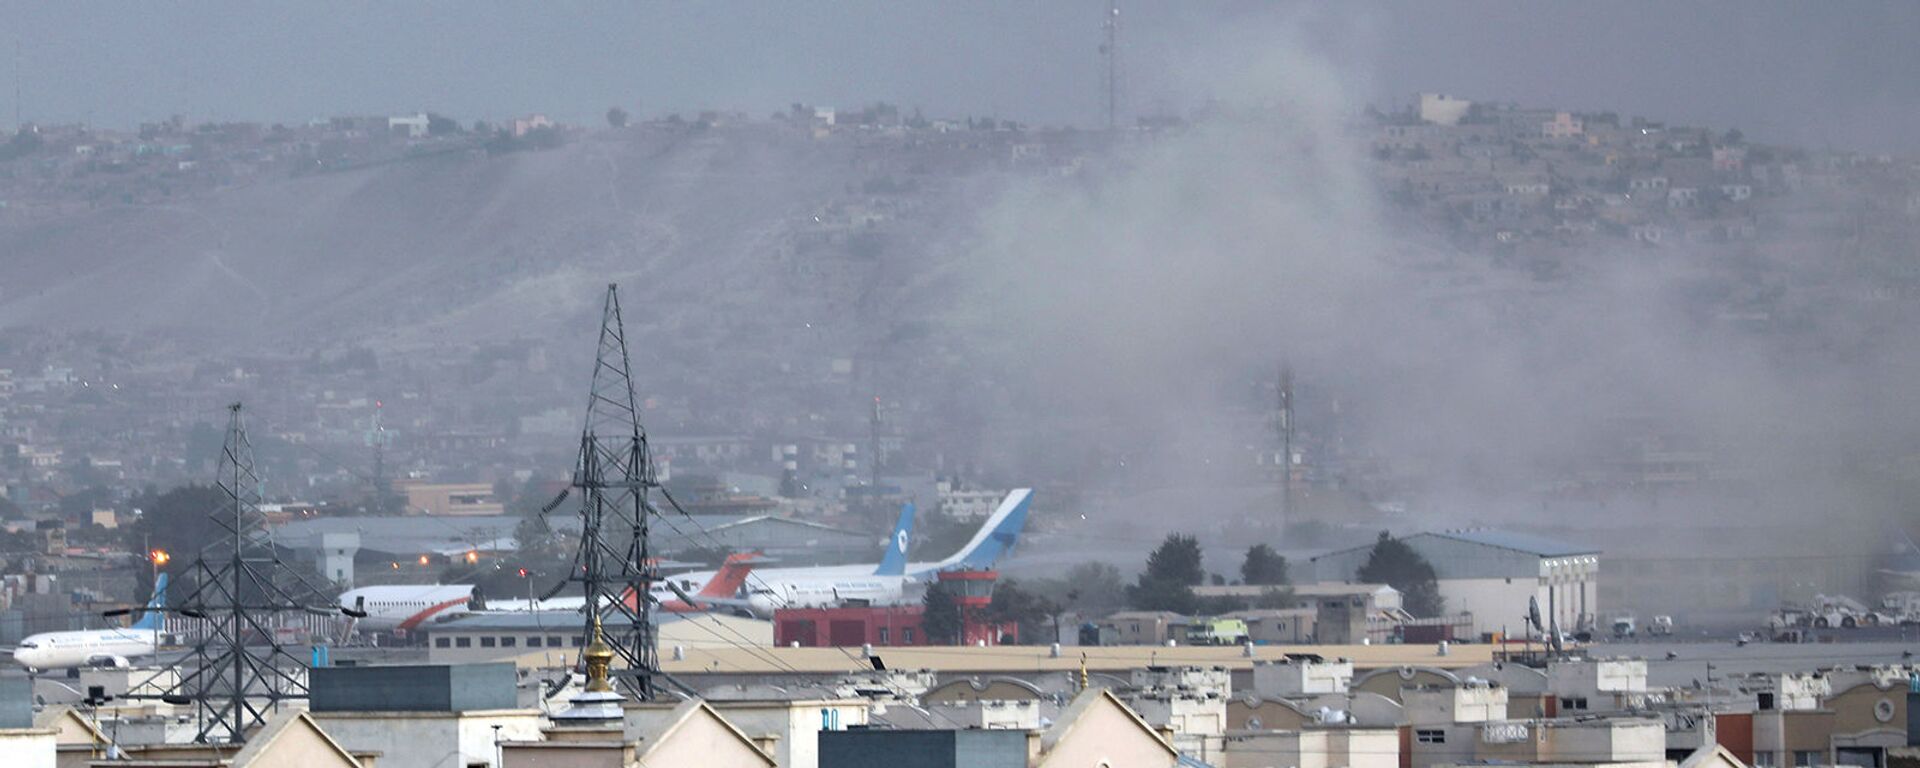 Дым от взрыва возле аэропорта в Кабуле (26 августа 2021). Афганистан - Sputnik Армения, 1920, 21.09.2021